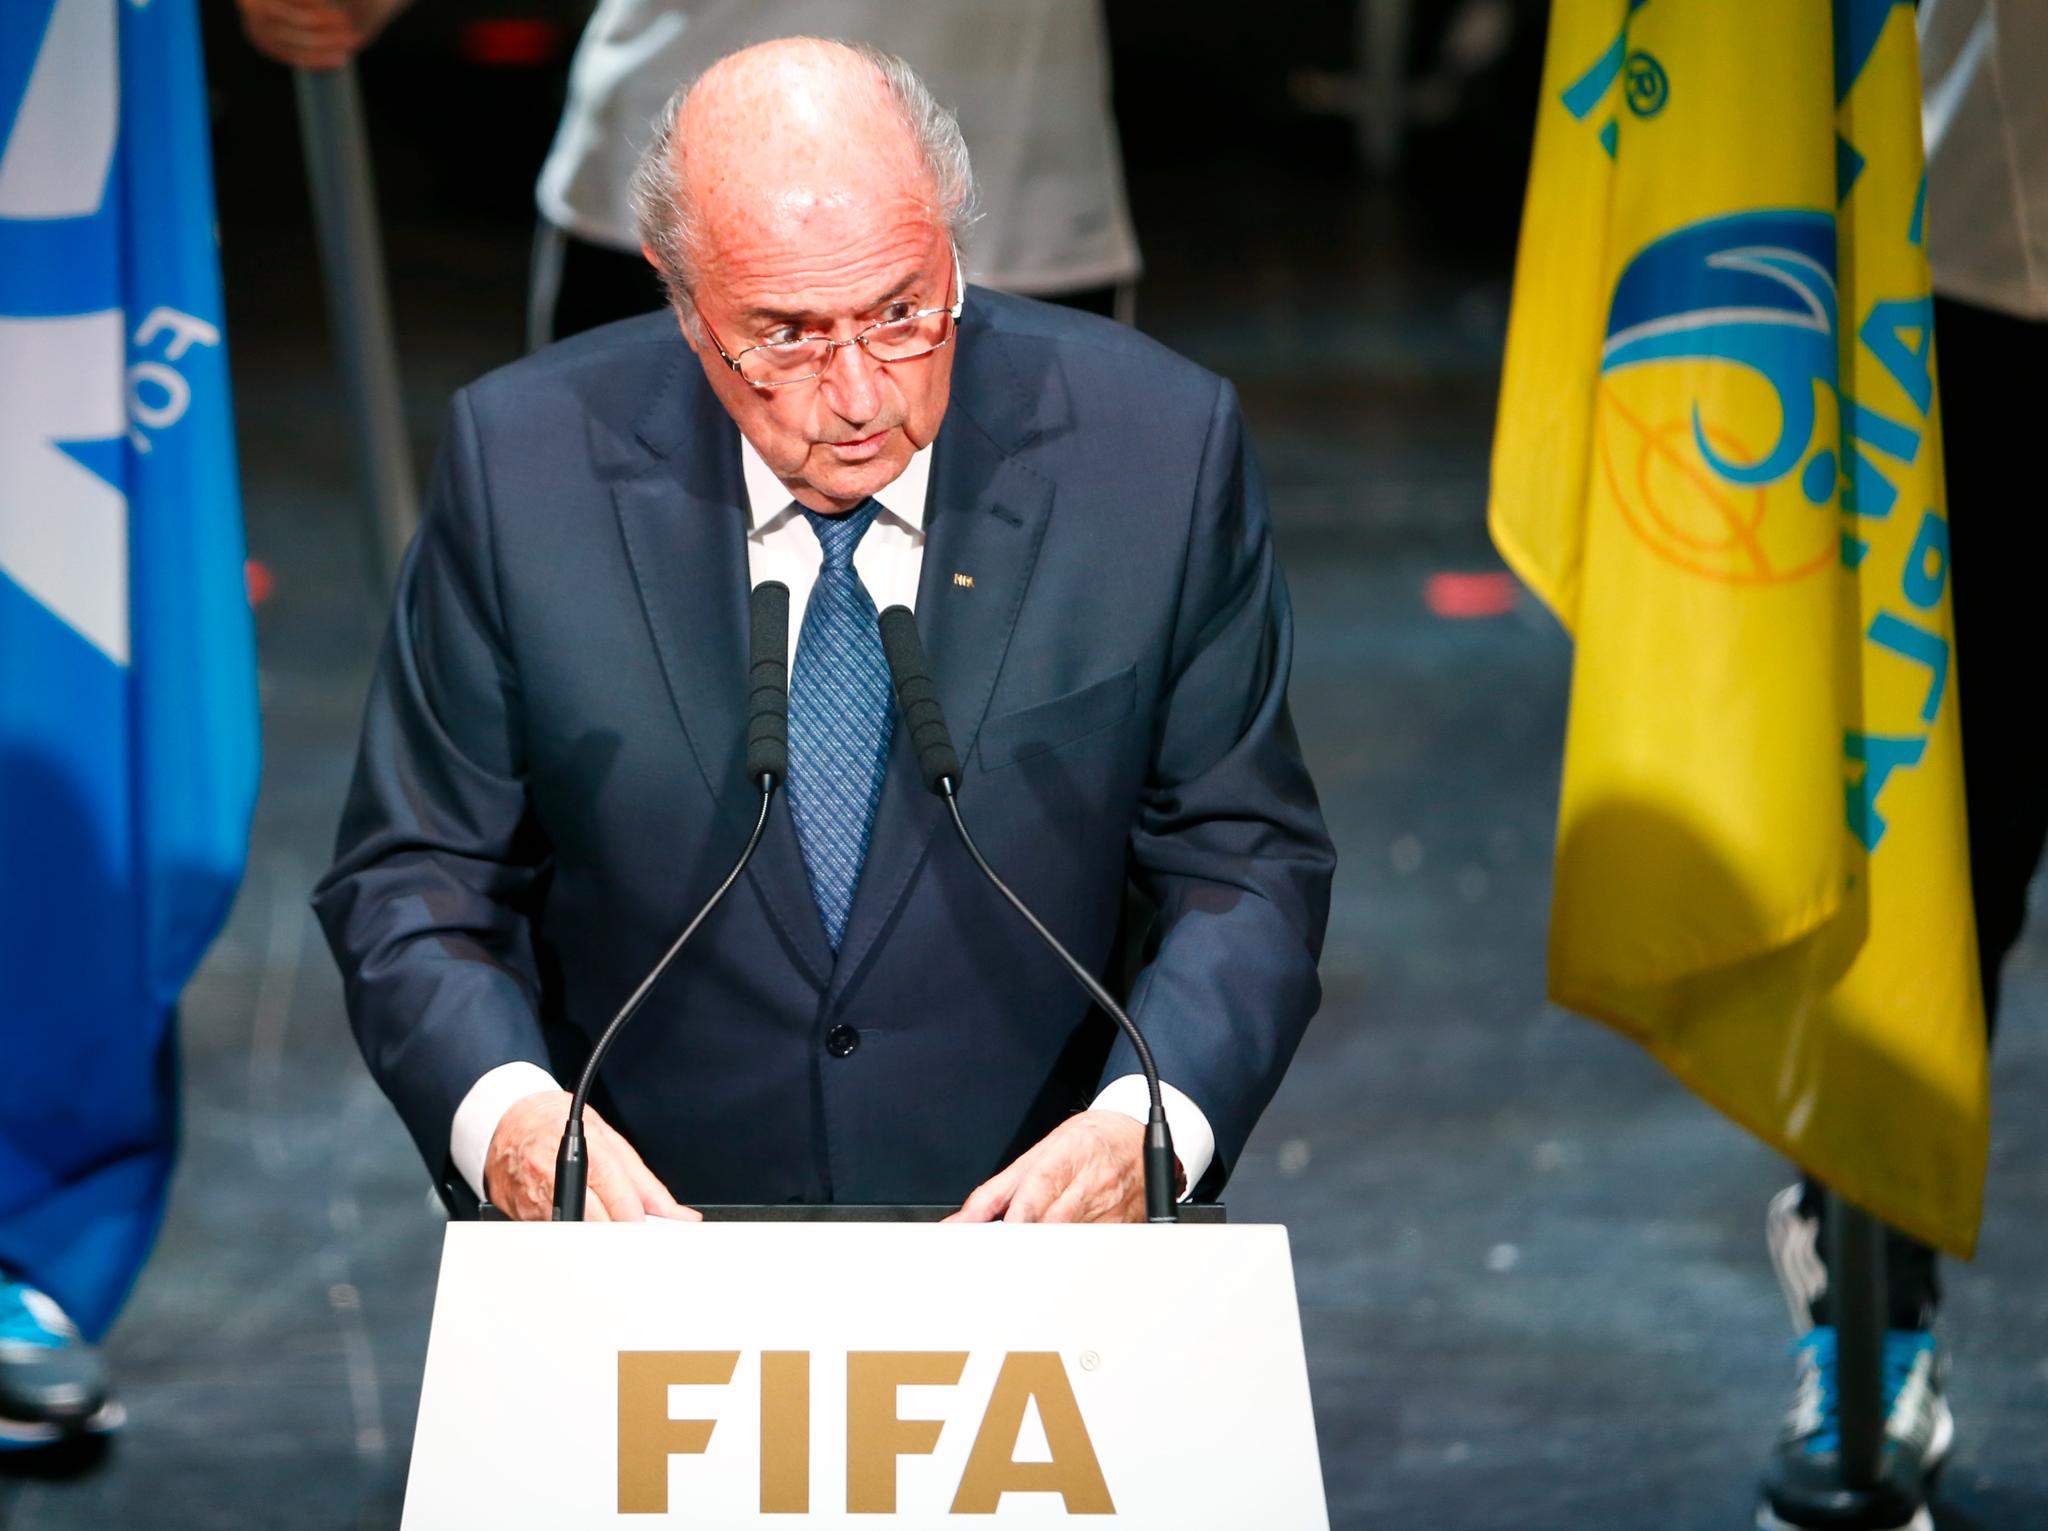 Sepp Blatter snakket om FIFA som en ydmyket organisasjon uten tillit da han åpnet kongressen i Zürich torsdag kveld. 